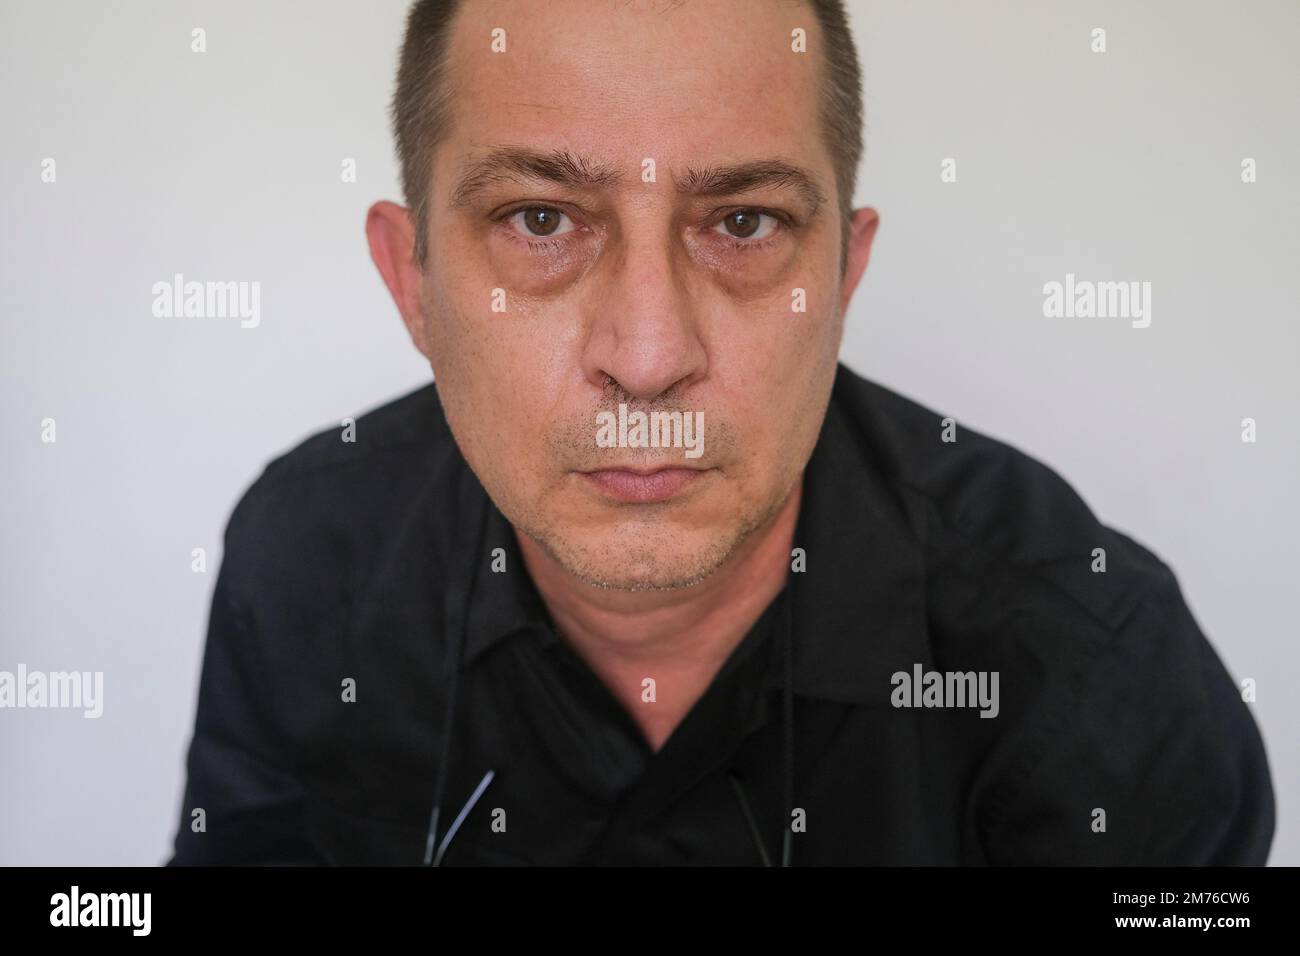 Retrato de primer plano del hombre caucásico con ojos holgados mirando a la cámara, contra bolsas de ojos de fondo blanco Foto de stock